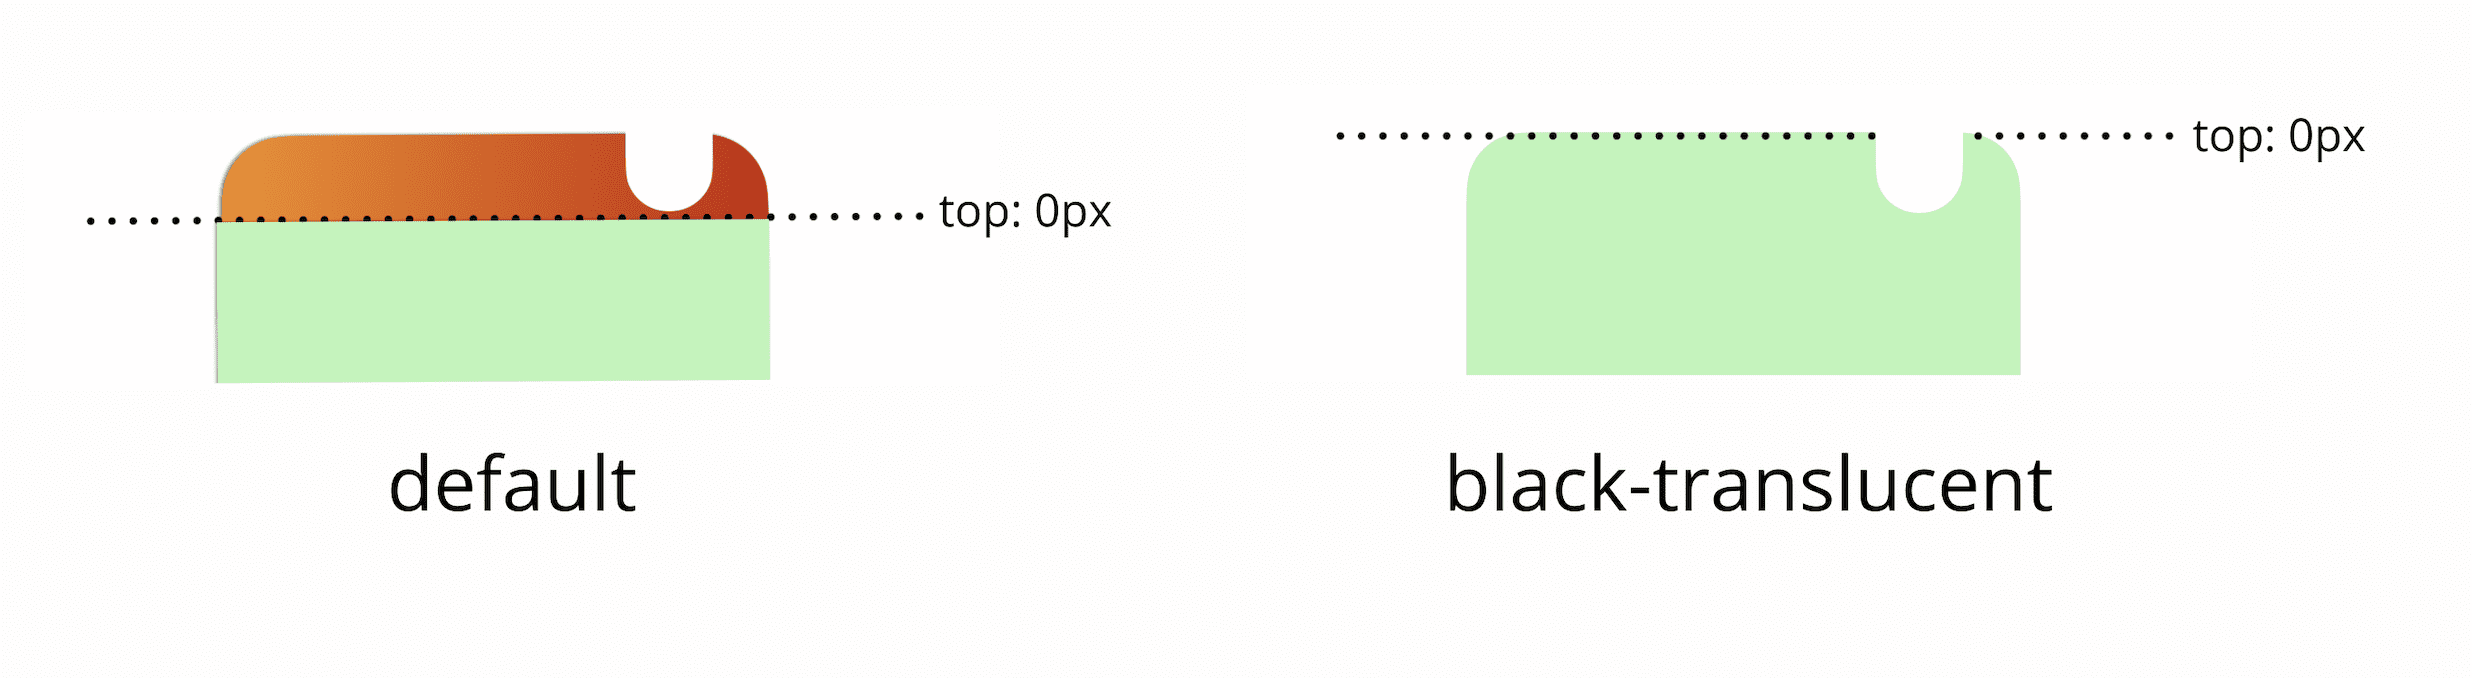 视口的顶部 0px 默认位于状态栏下方；如果您添加黑色半透明元标记，视口顶部 0px 将与屏幕的实际顶端匹配